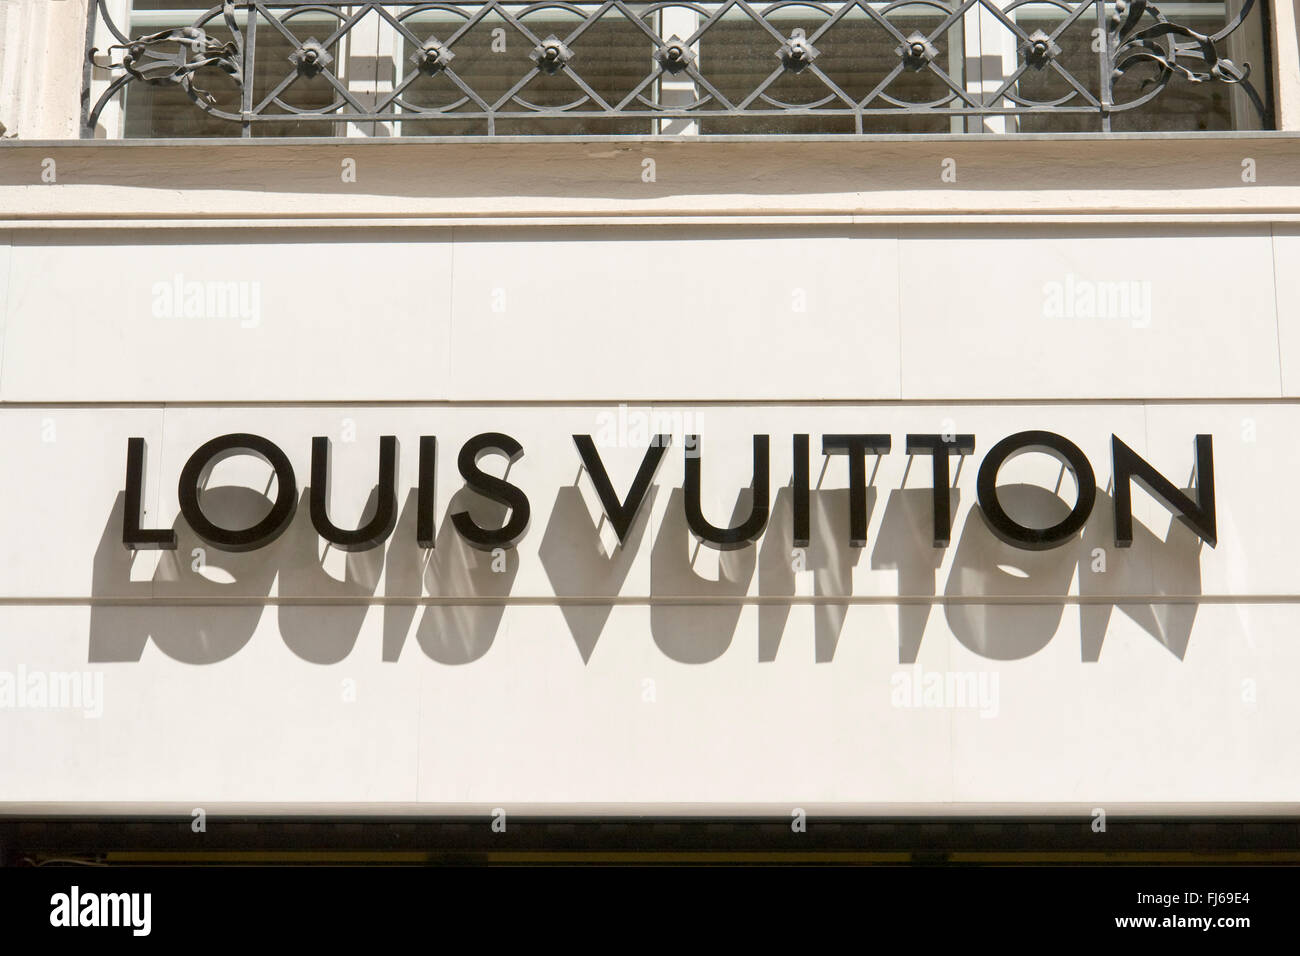 Louis Vuitton Vienna  Honeymoon pictures, Vienna, Austria